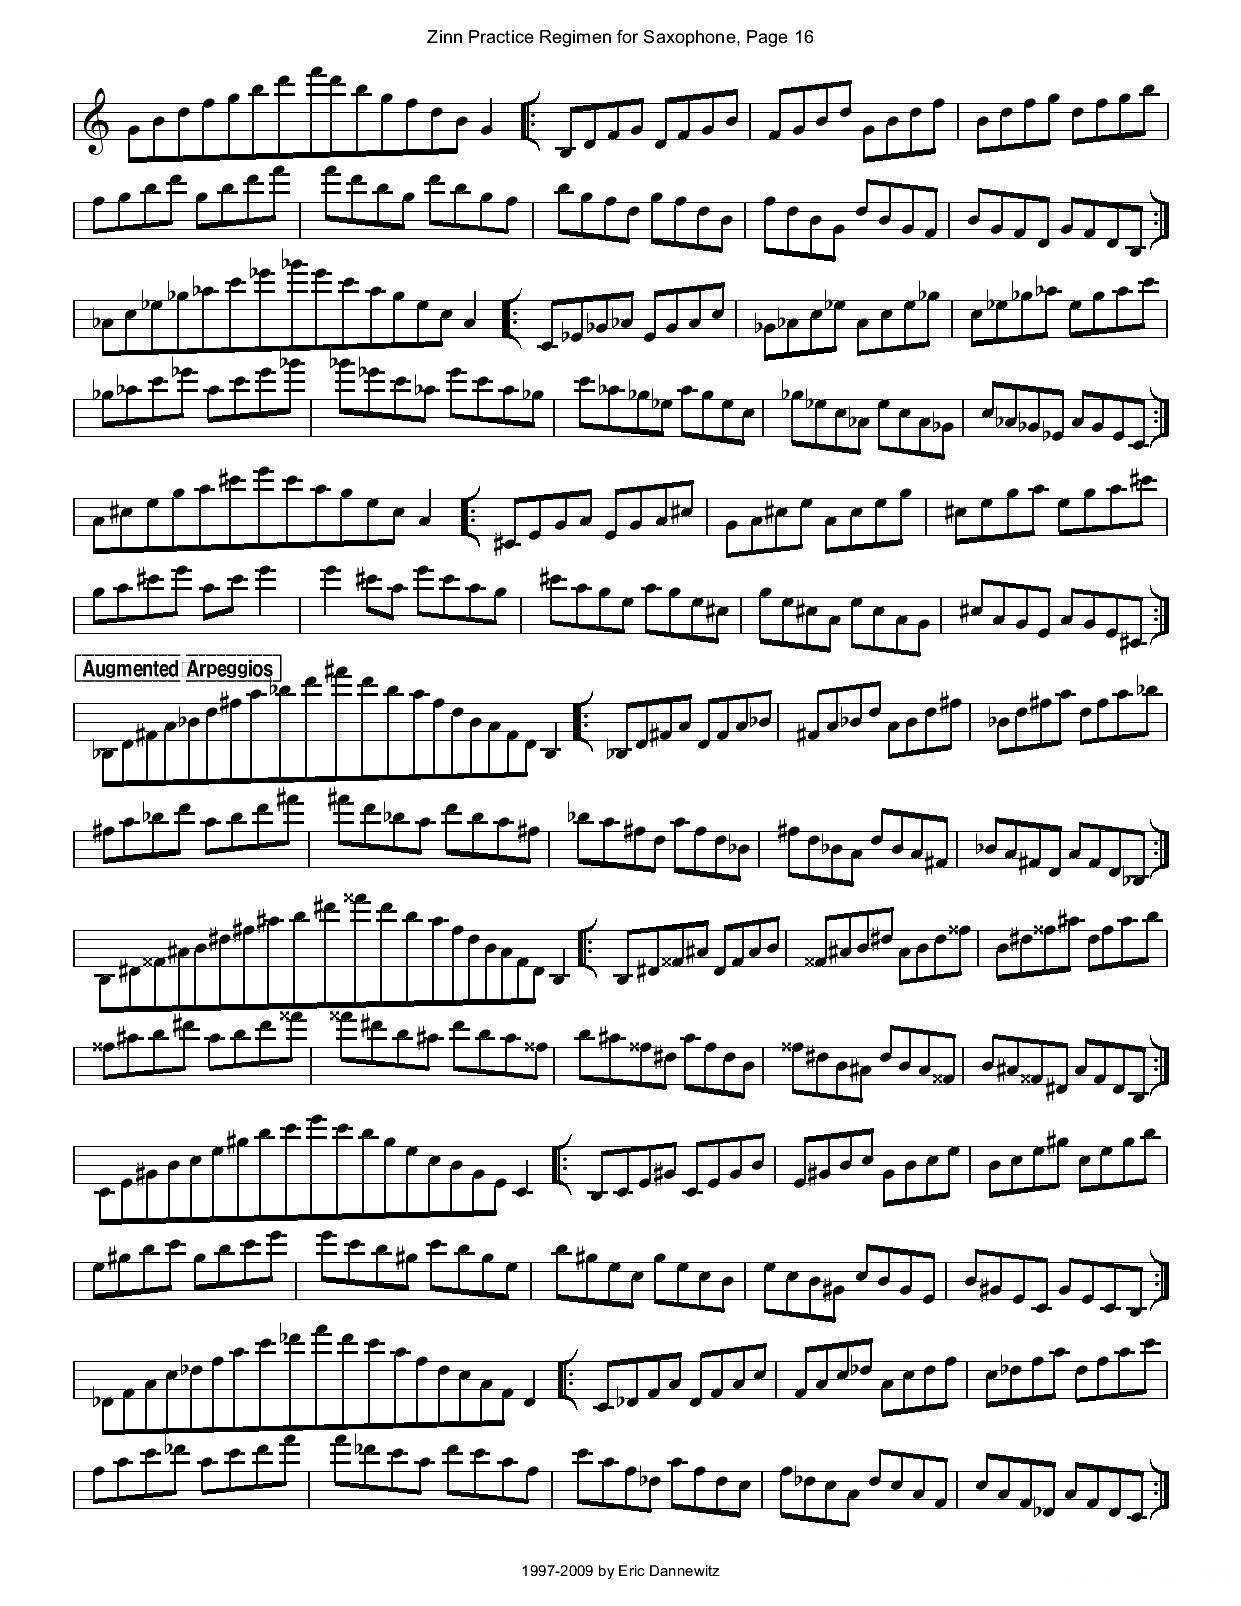 ZinnRegimenSax2009练习曲萨克斯曲谱（图19）